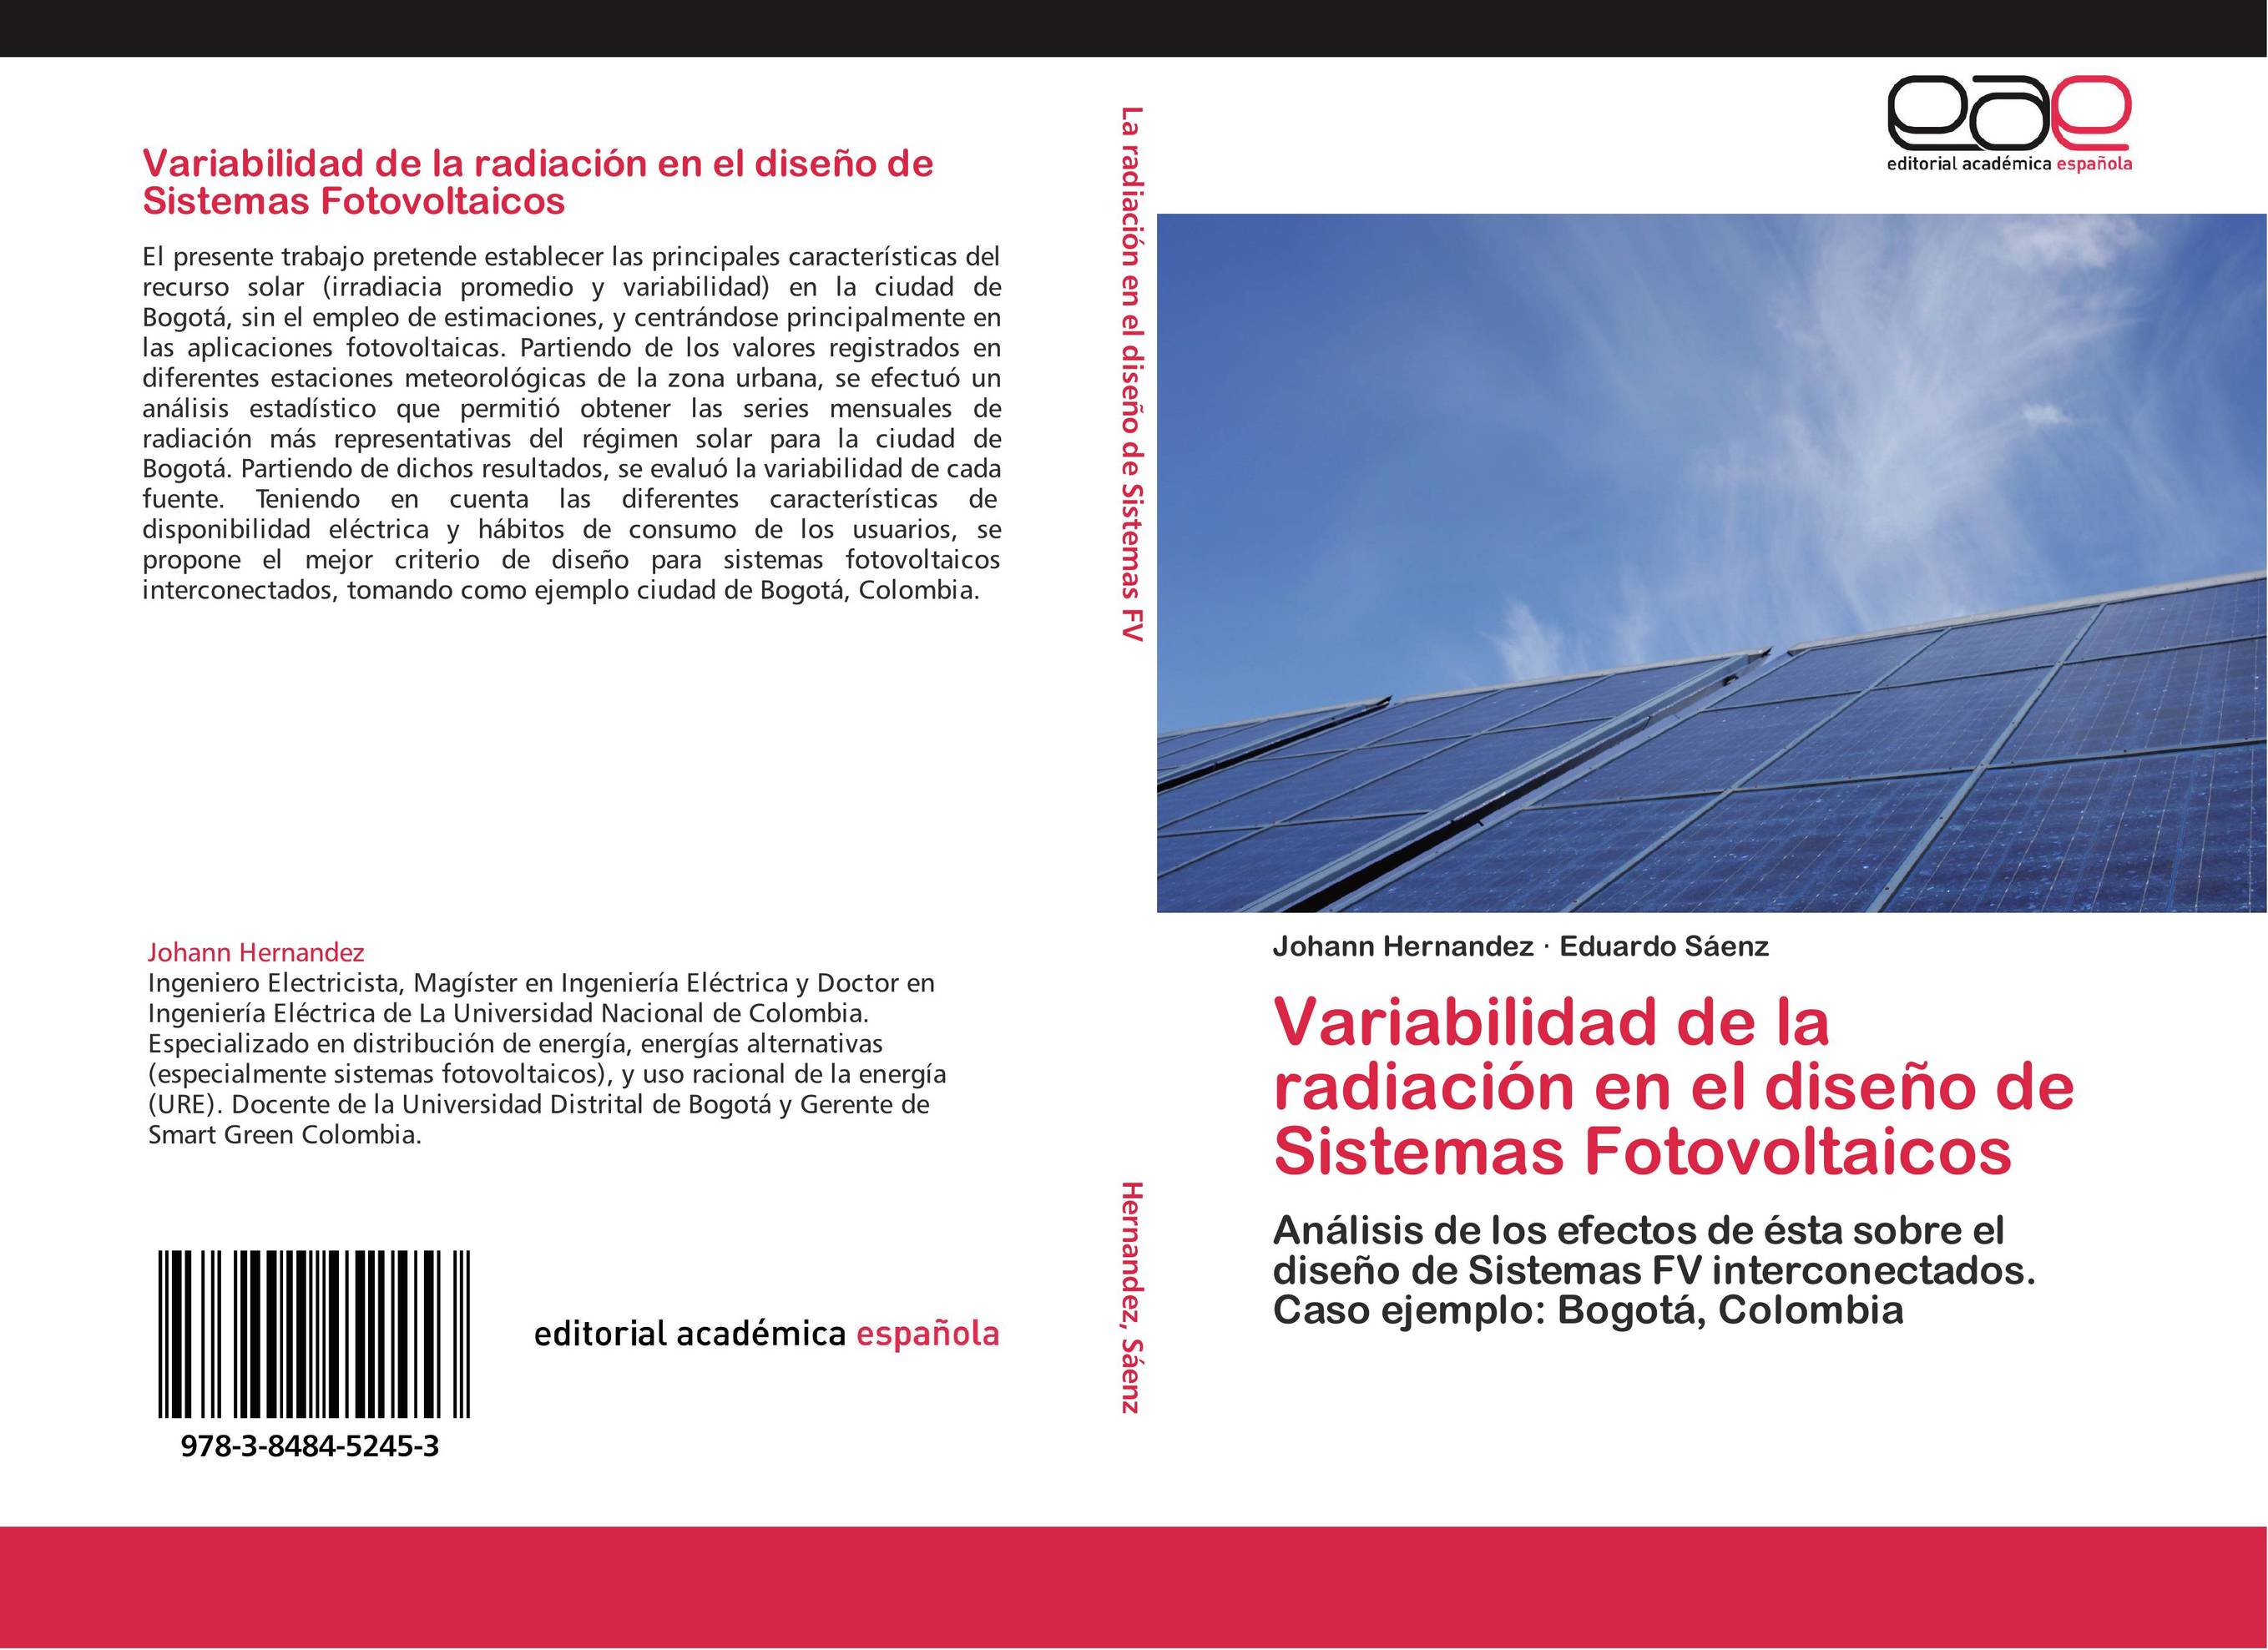 Variabilidad de la radiación en el diseño de Sistemas Fotovoltaicos